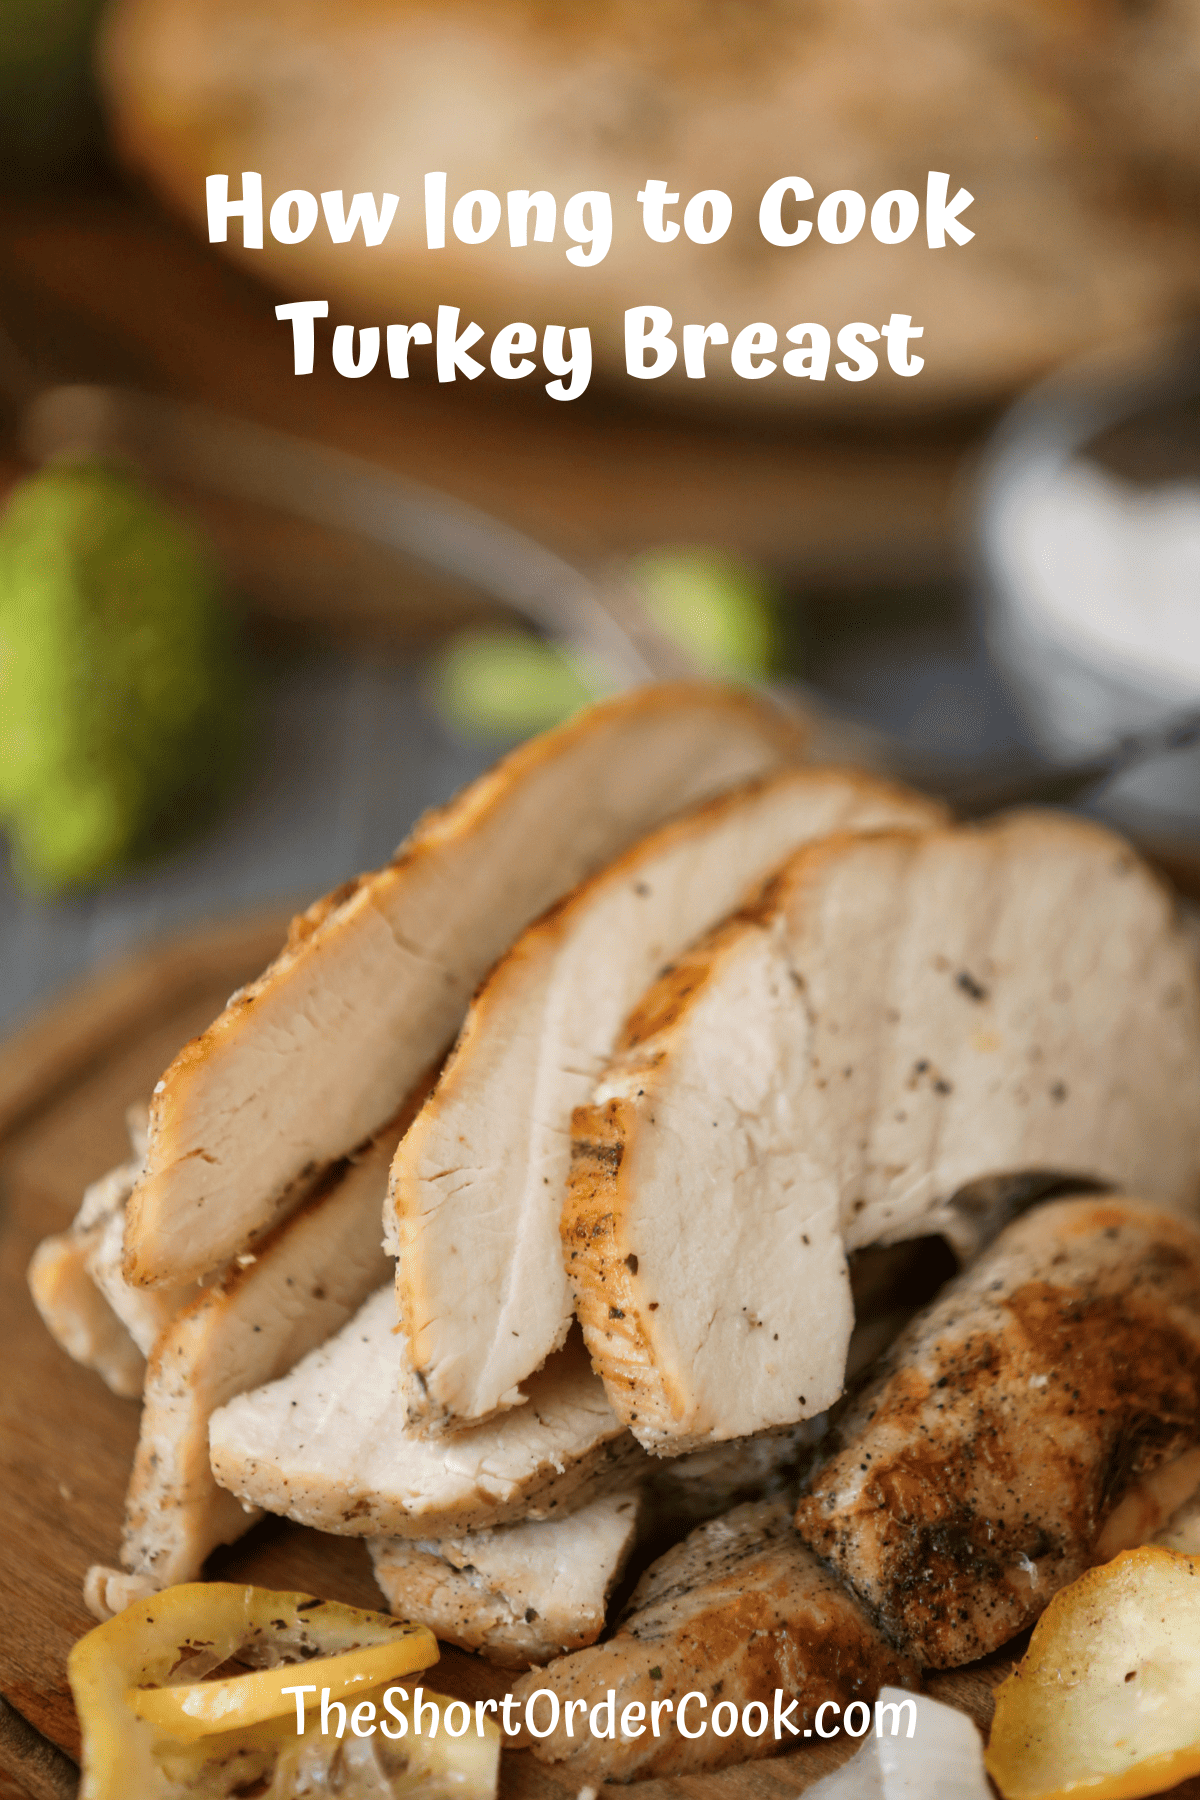 Turkey breast sliced on a cutting board.